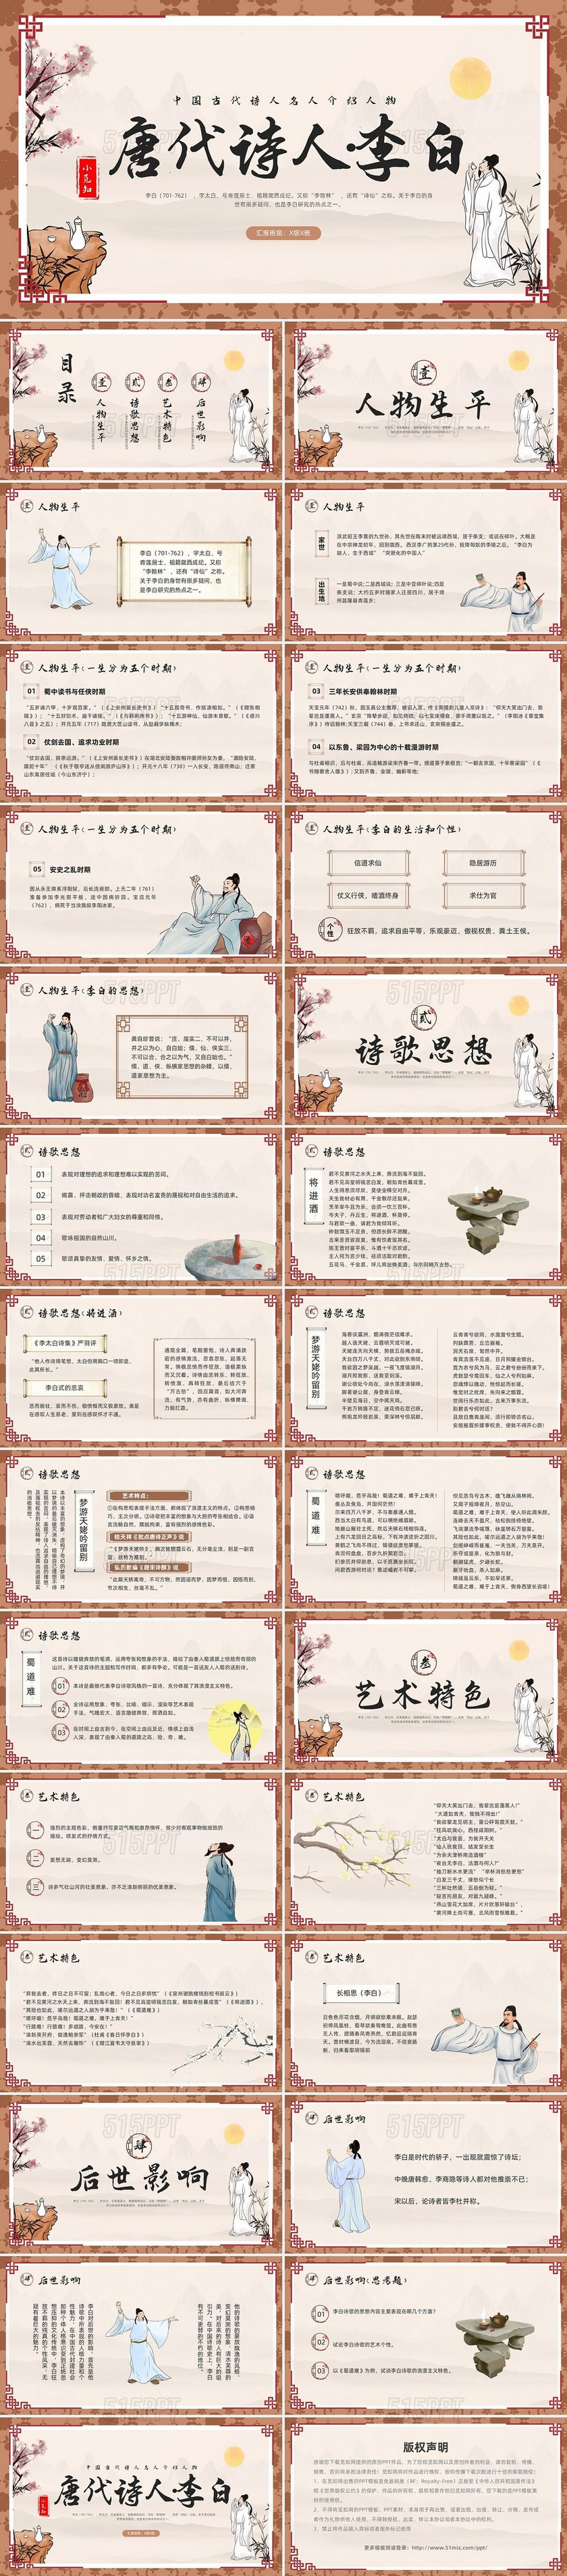 棕色古风中国古代诗人名人介绍人物唐代诗人李白PPT模板宣传人物介绍